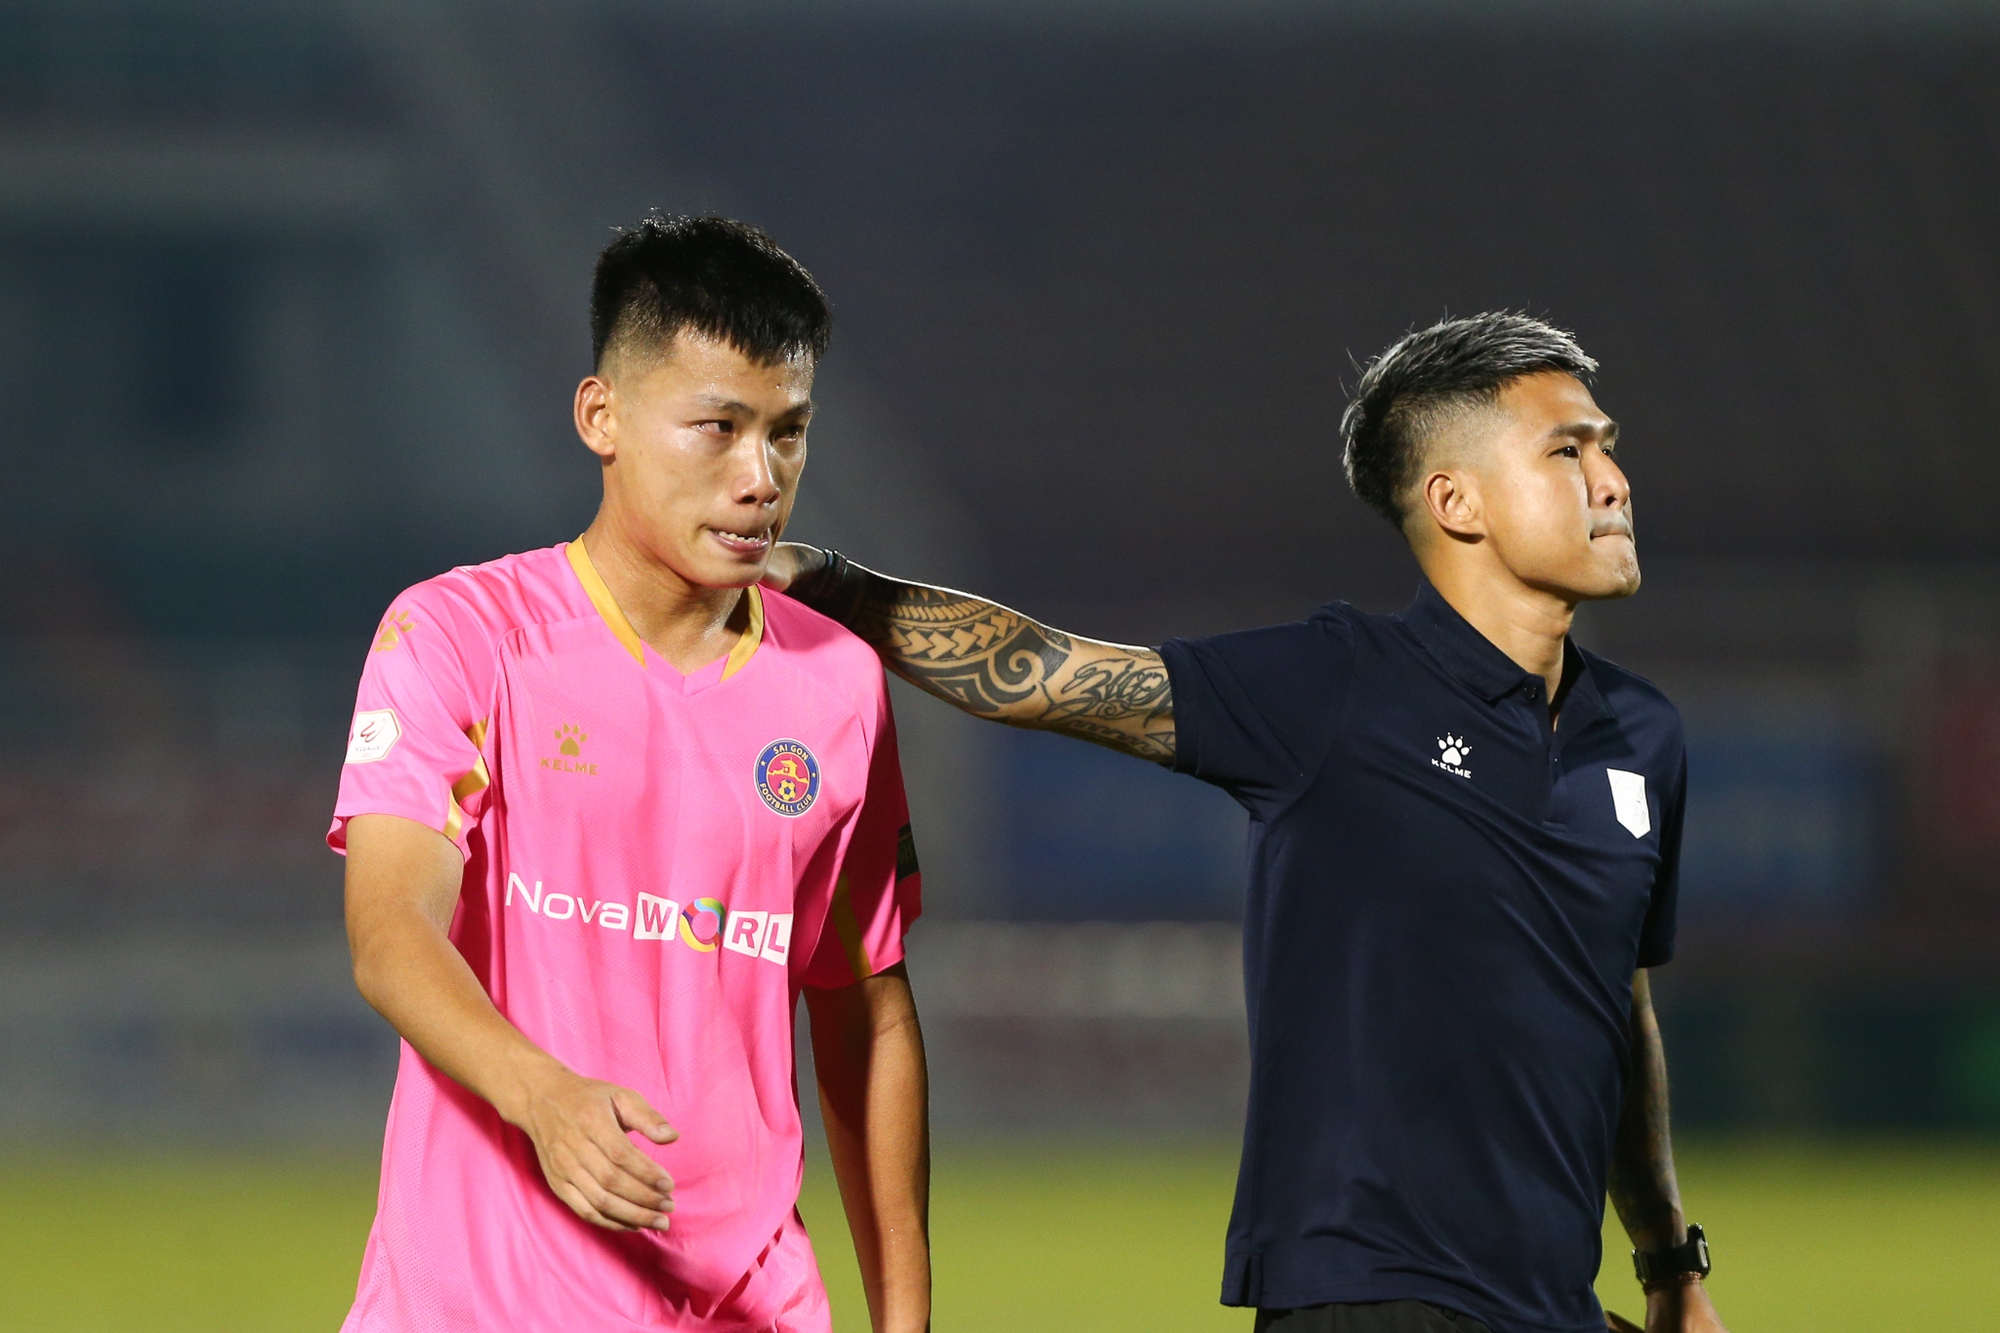 CLB Sài Gòn thanh lý hợp đồng toàn đội ngay trước ngày chính thức xuống hạng - Ảnh 1.